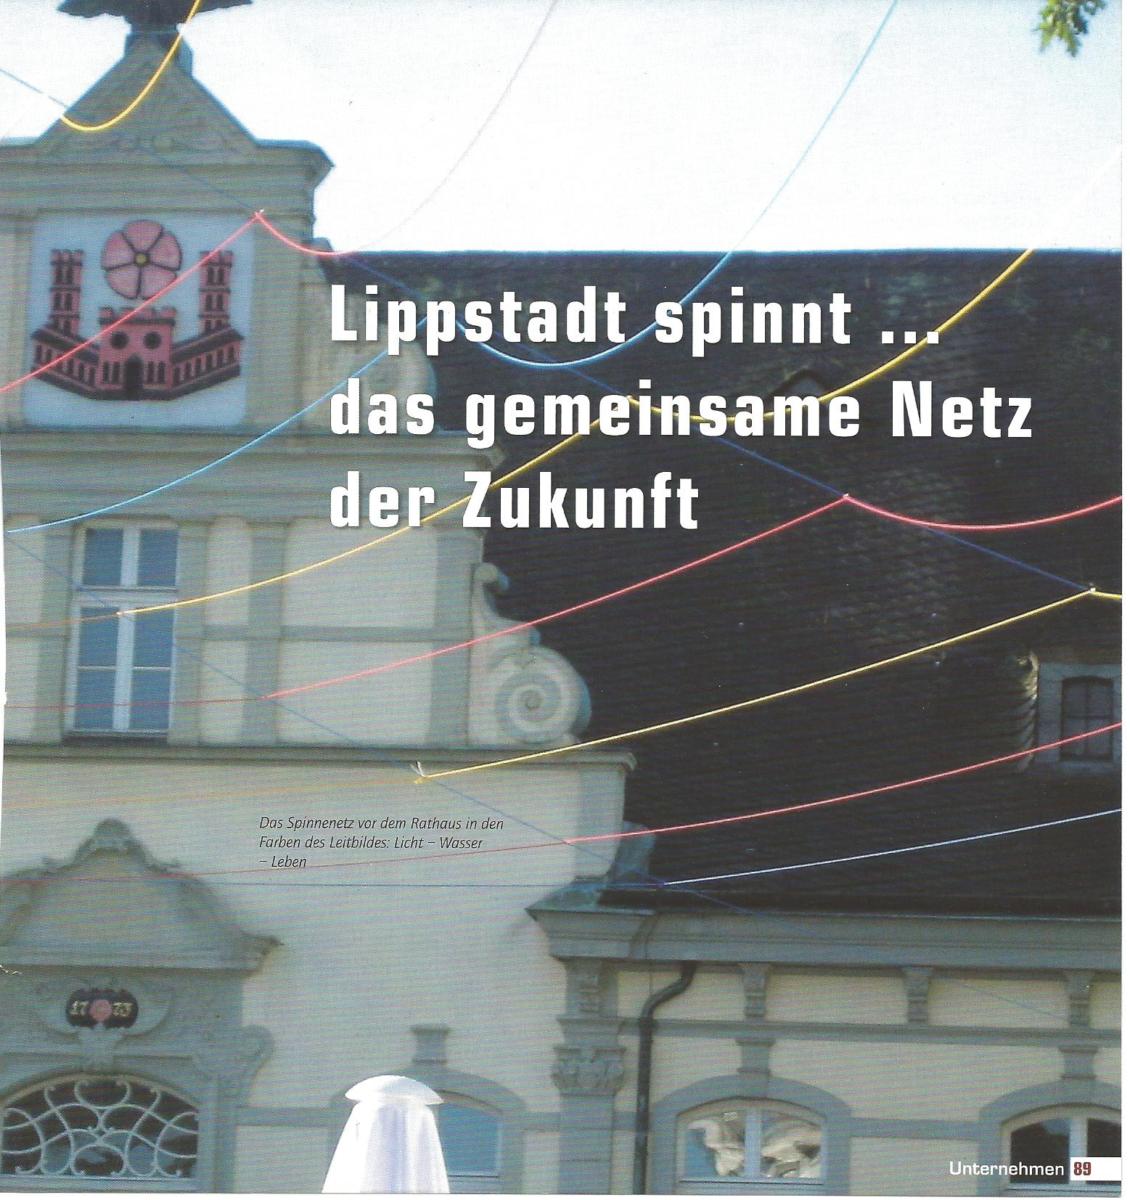 Lippstadt spinnt